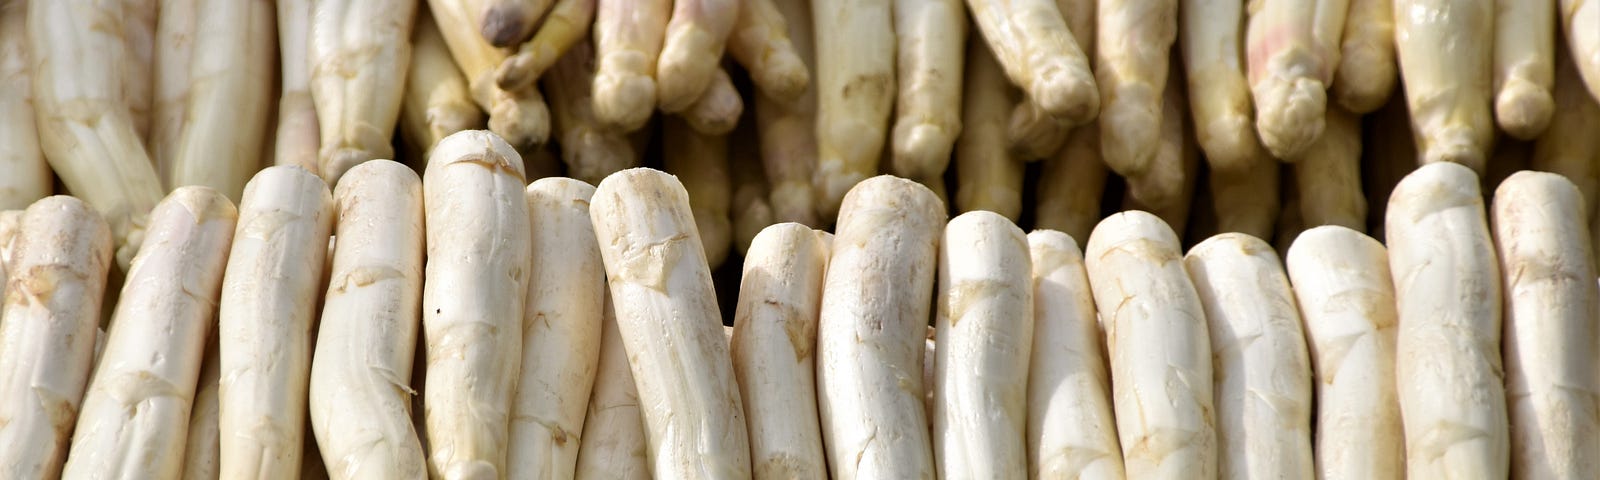 A photo of white asparagus